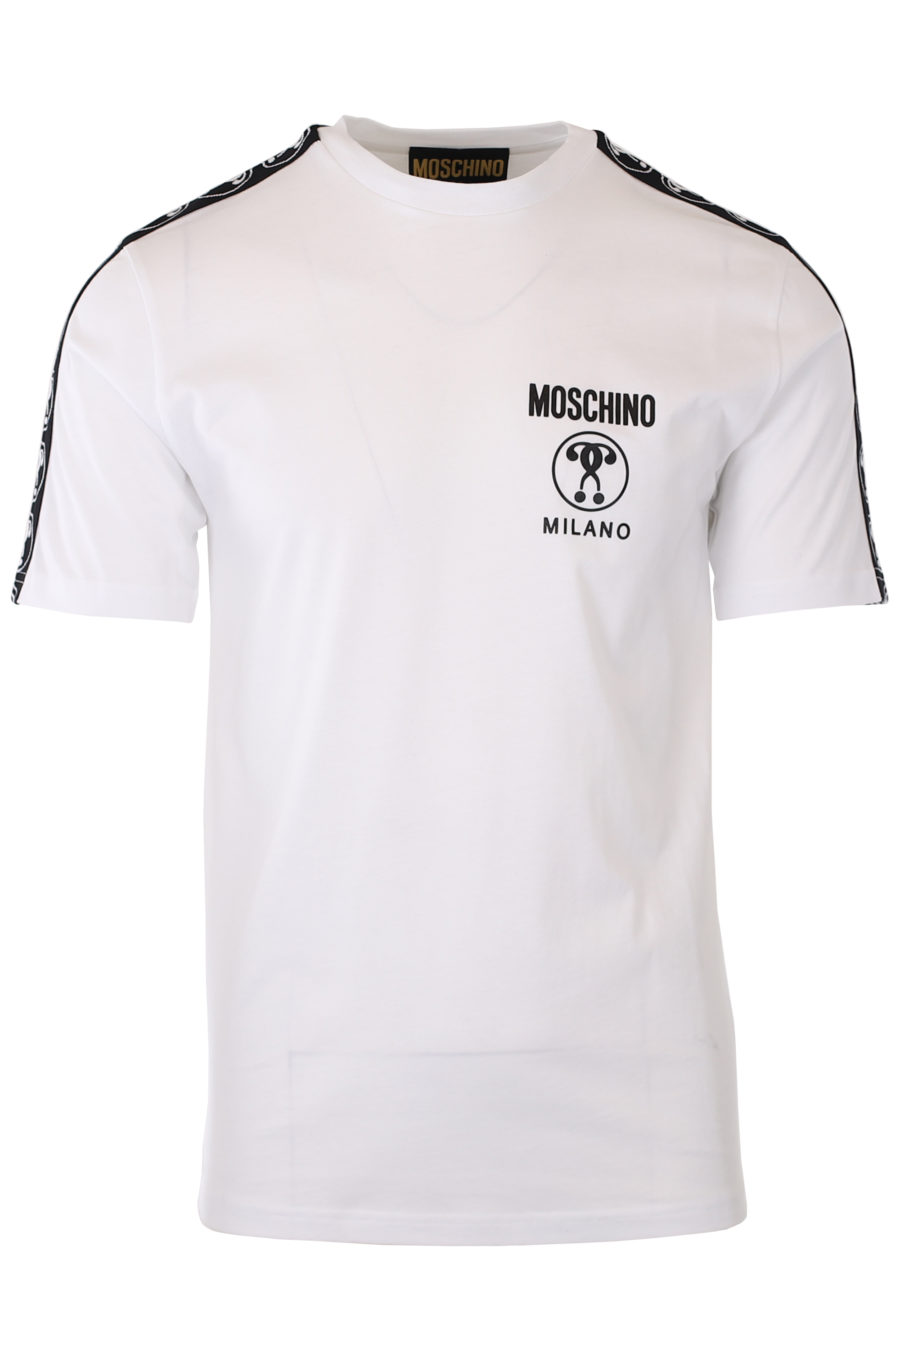 Weißes T-Shirt mit kleinem Doppelfrage-Logo und Band am Ärmel - IMG 9326